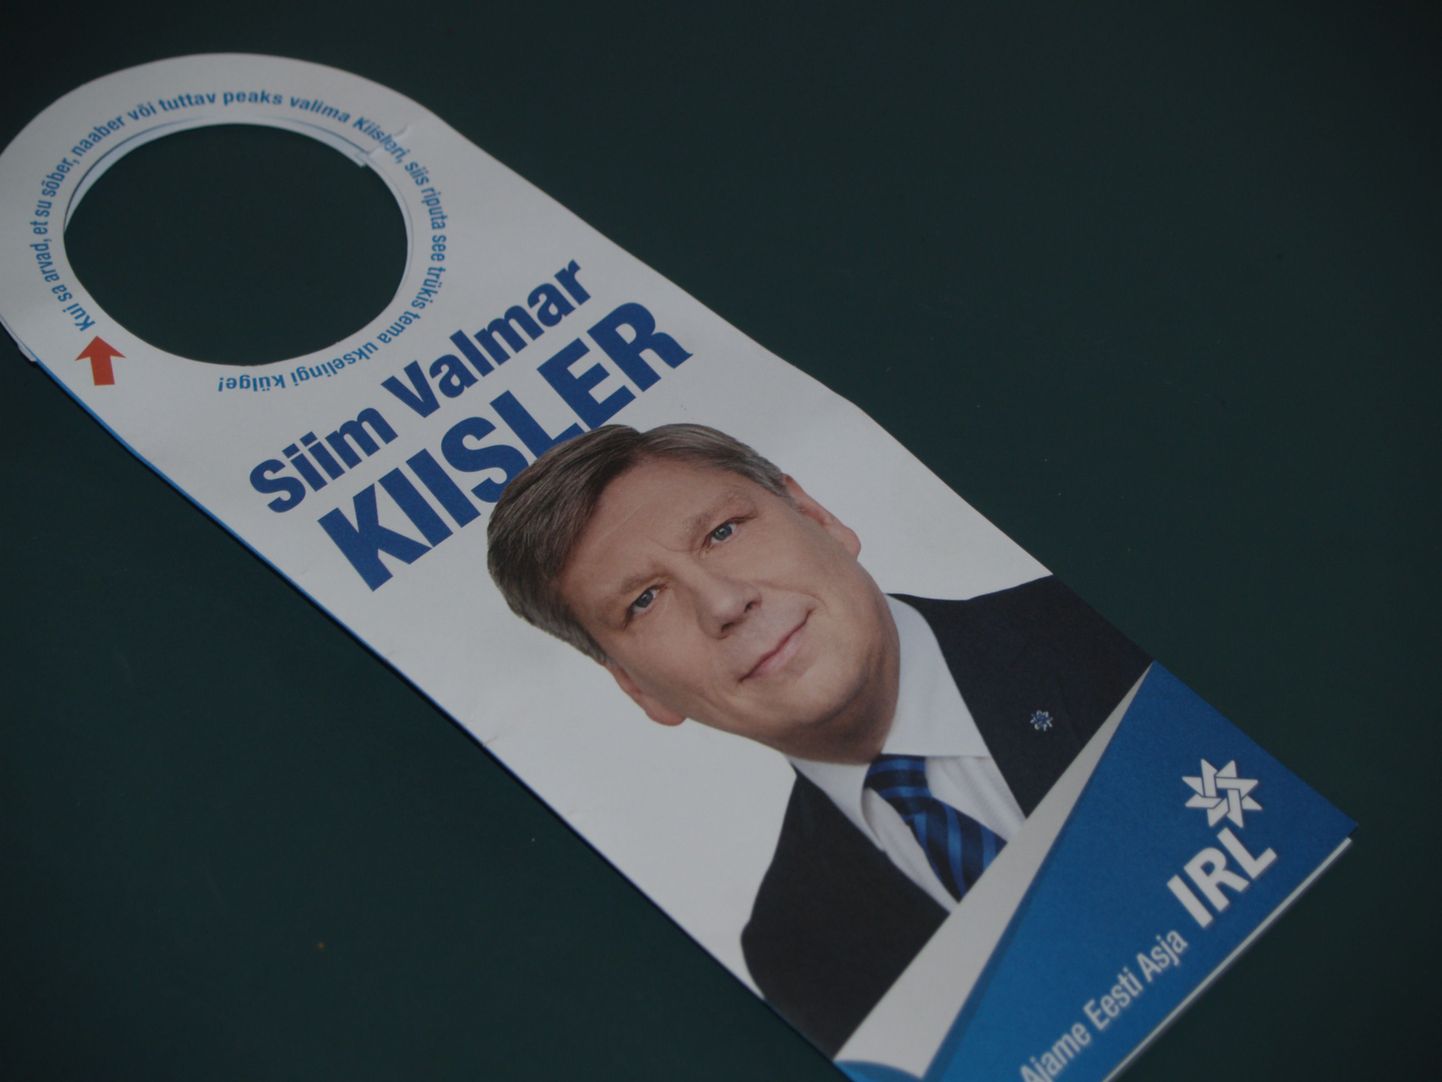 Предвыборный буклет Сийма Вальмара Кийслера, который многие таллиннцы обнаружили на дверях своих квартир.